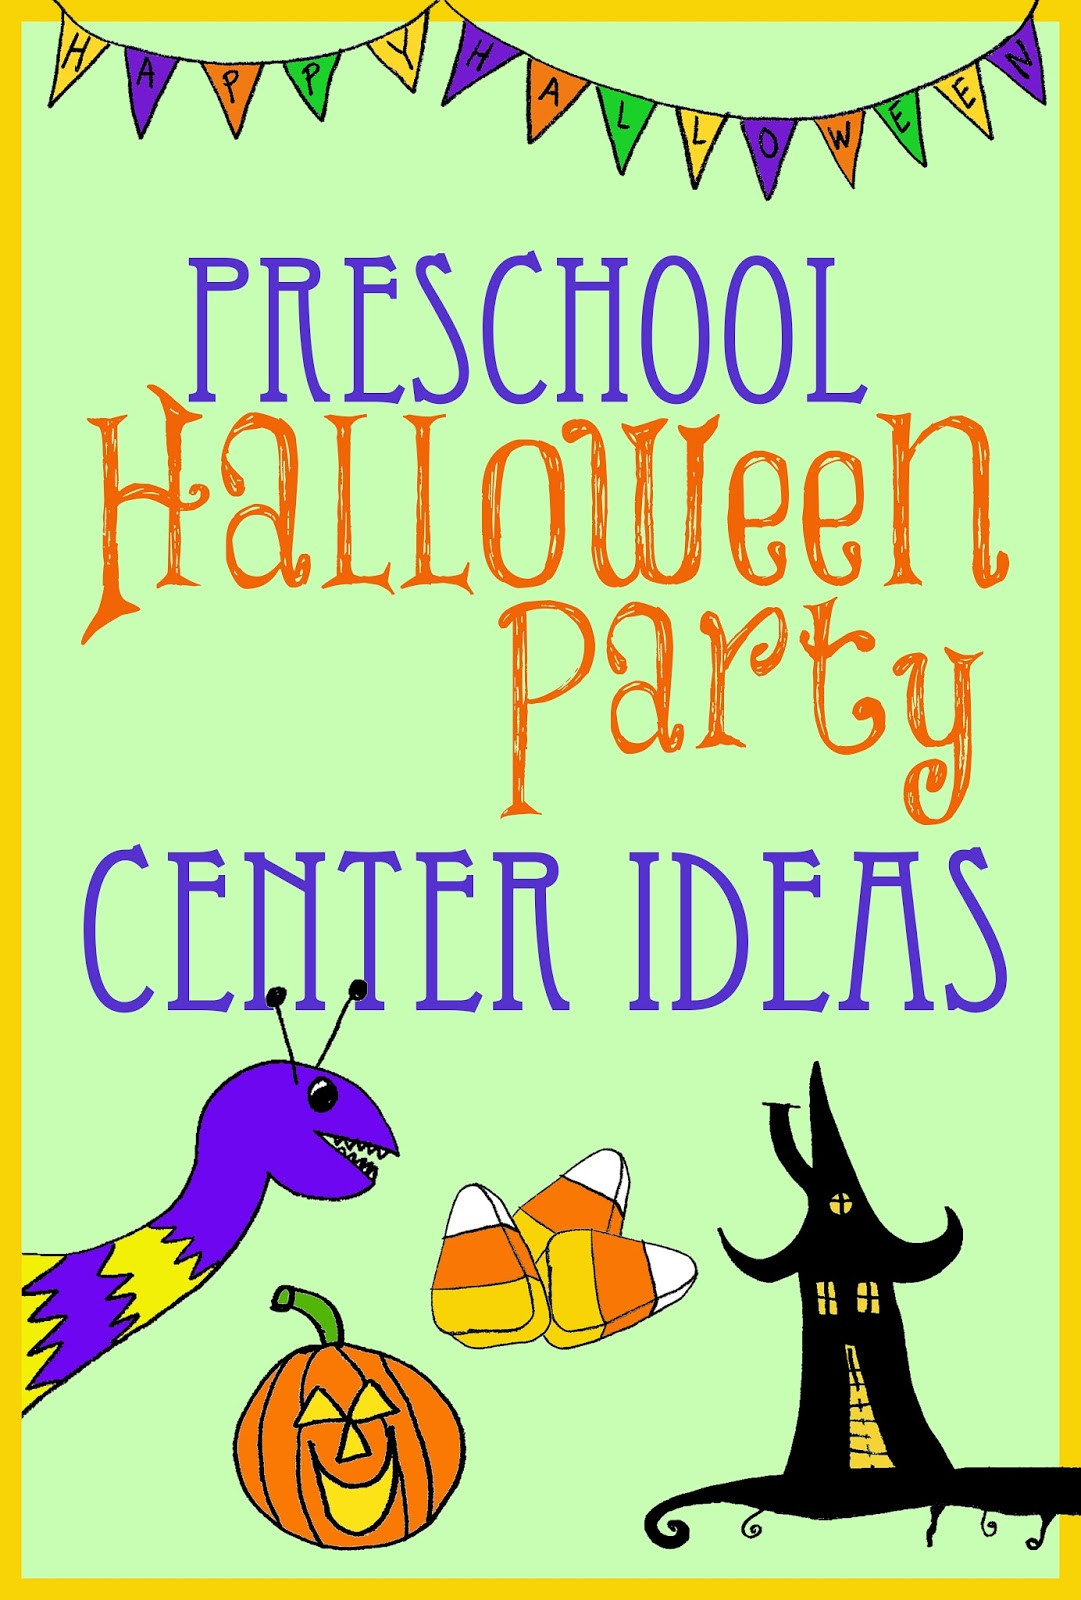 Kindergarten Halloween Party Ideas
 Halloween Party Center Ideas for Preschool Kindergarten